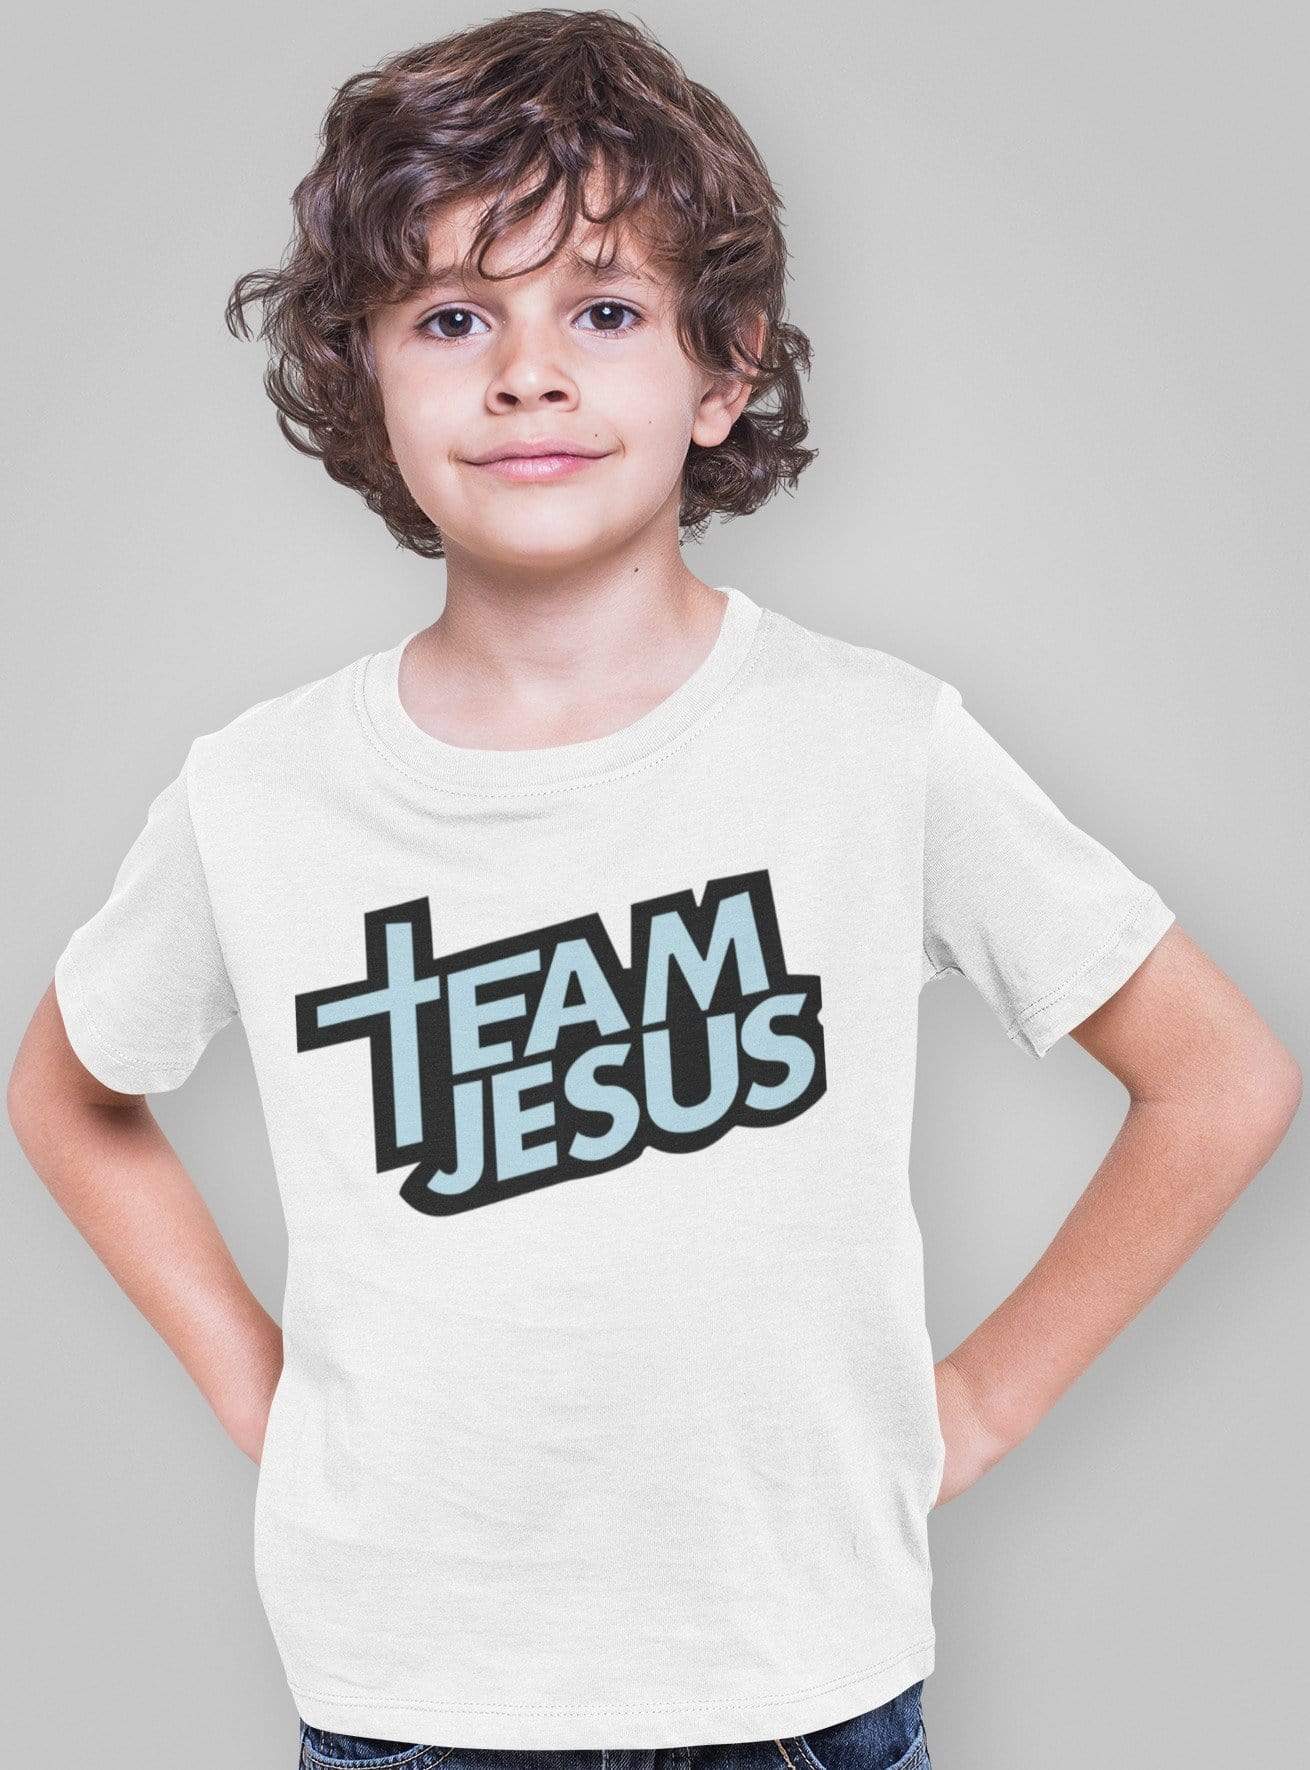 Living Words Boy Round neck Tshirt 0-11M / White Team Jesus